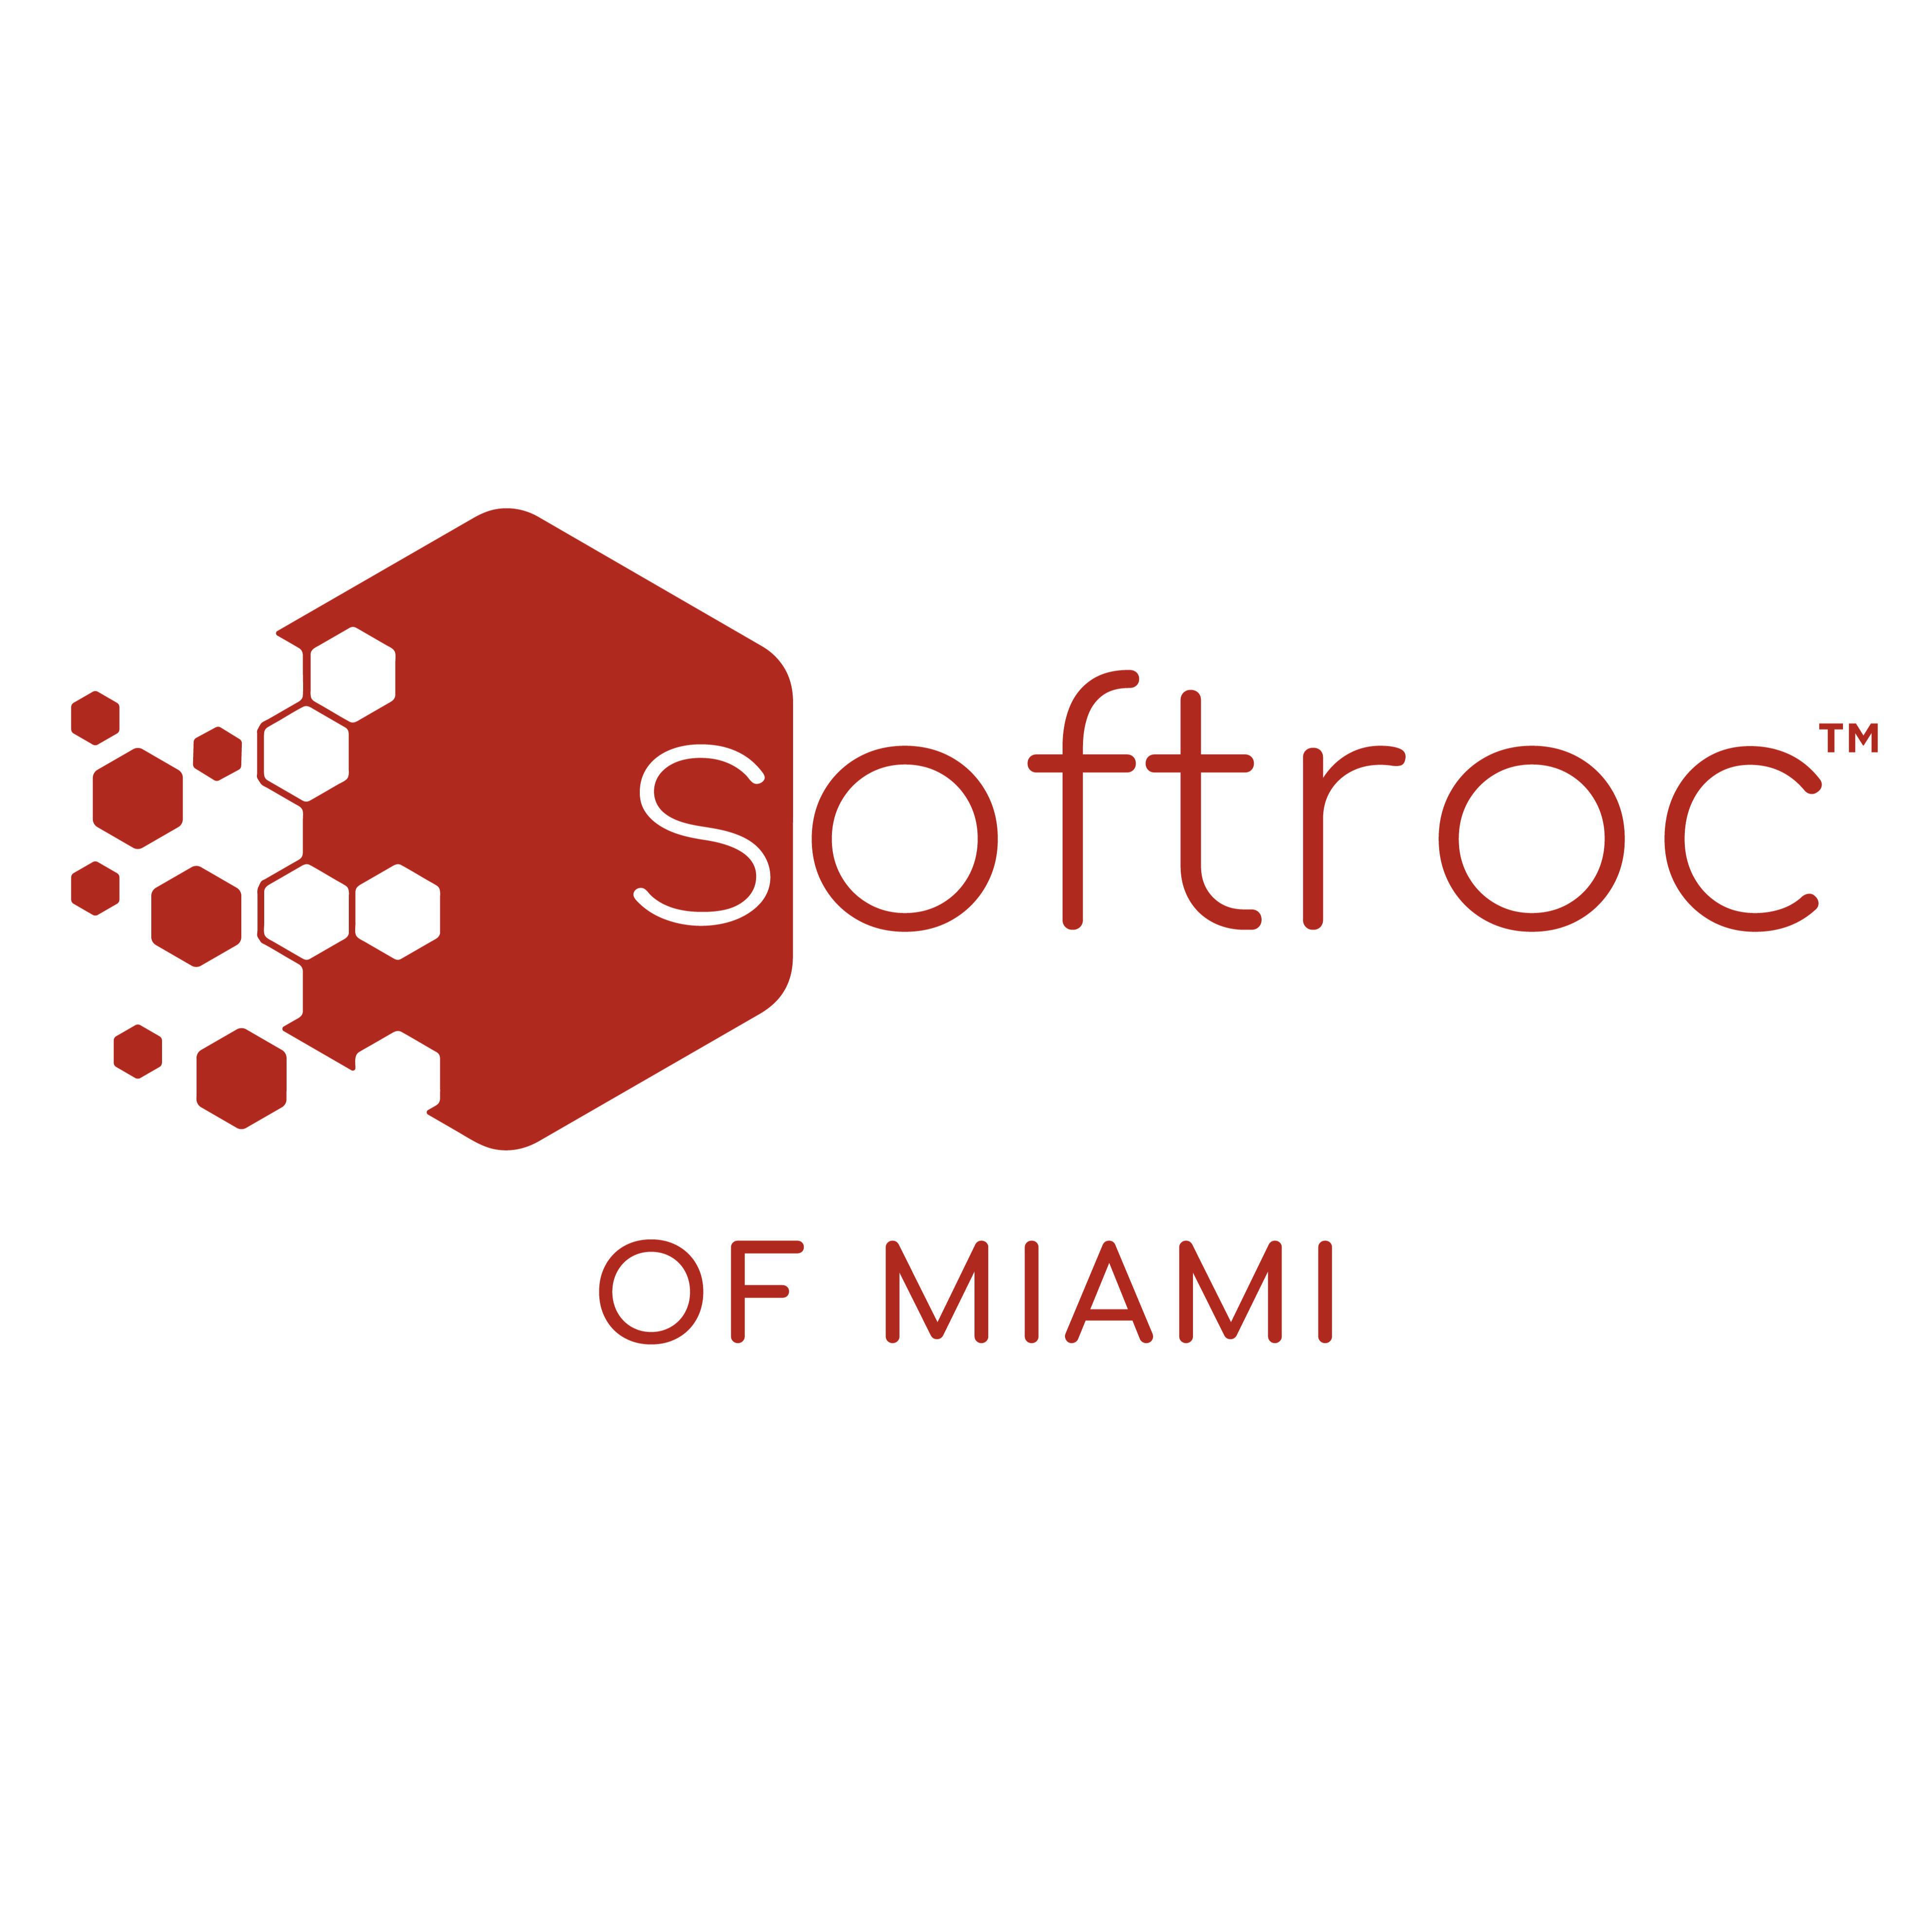 Softroc of Miami